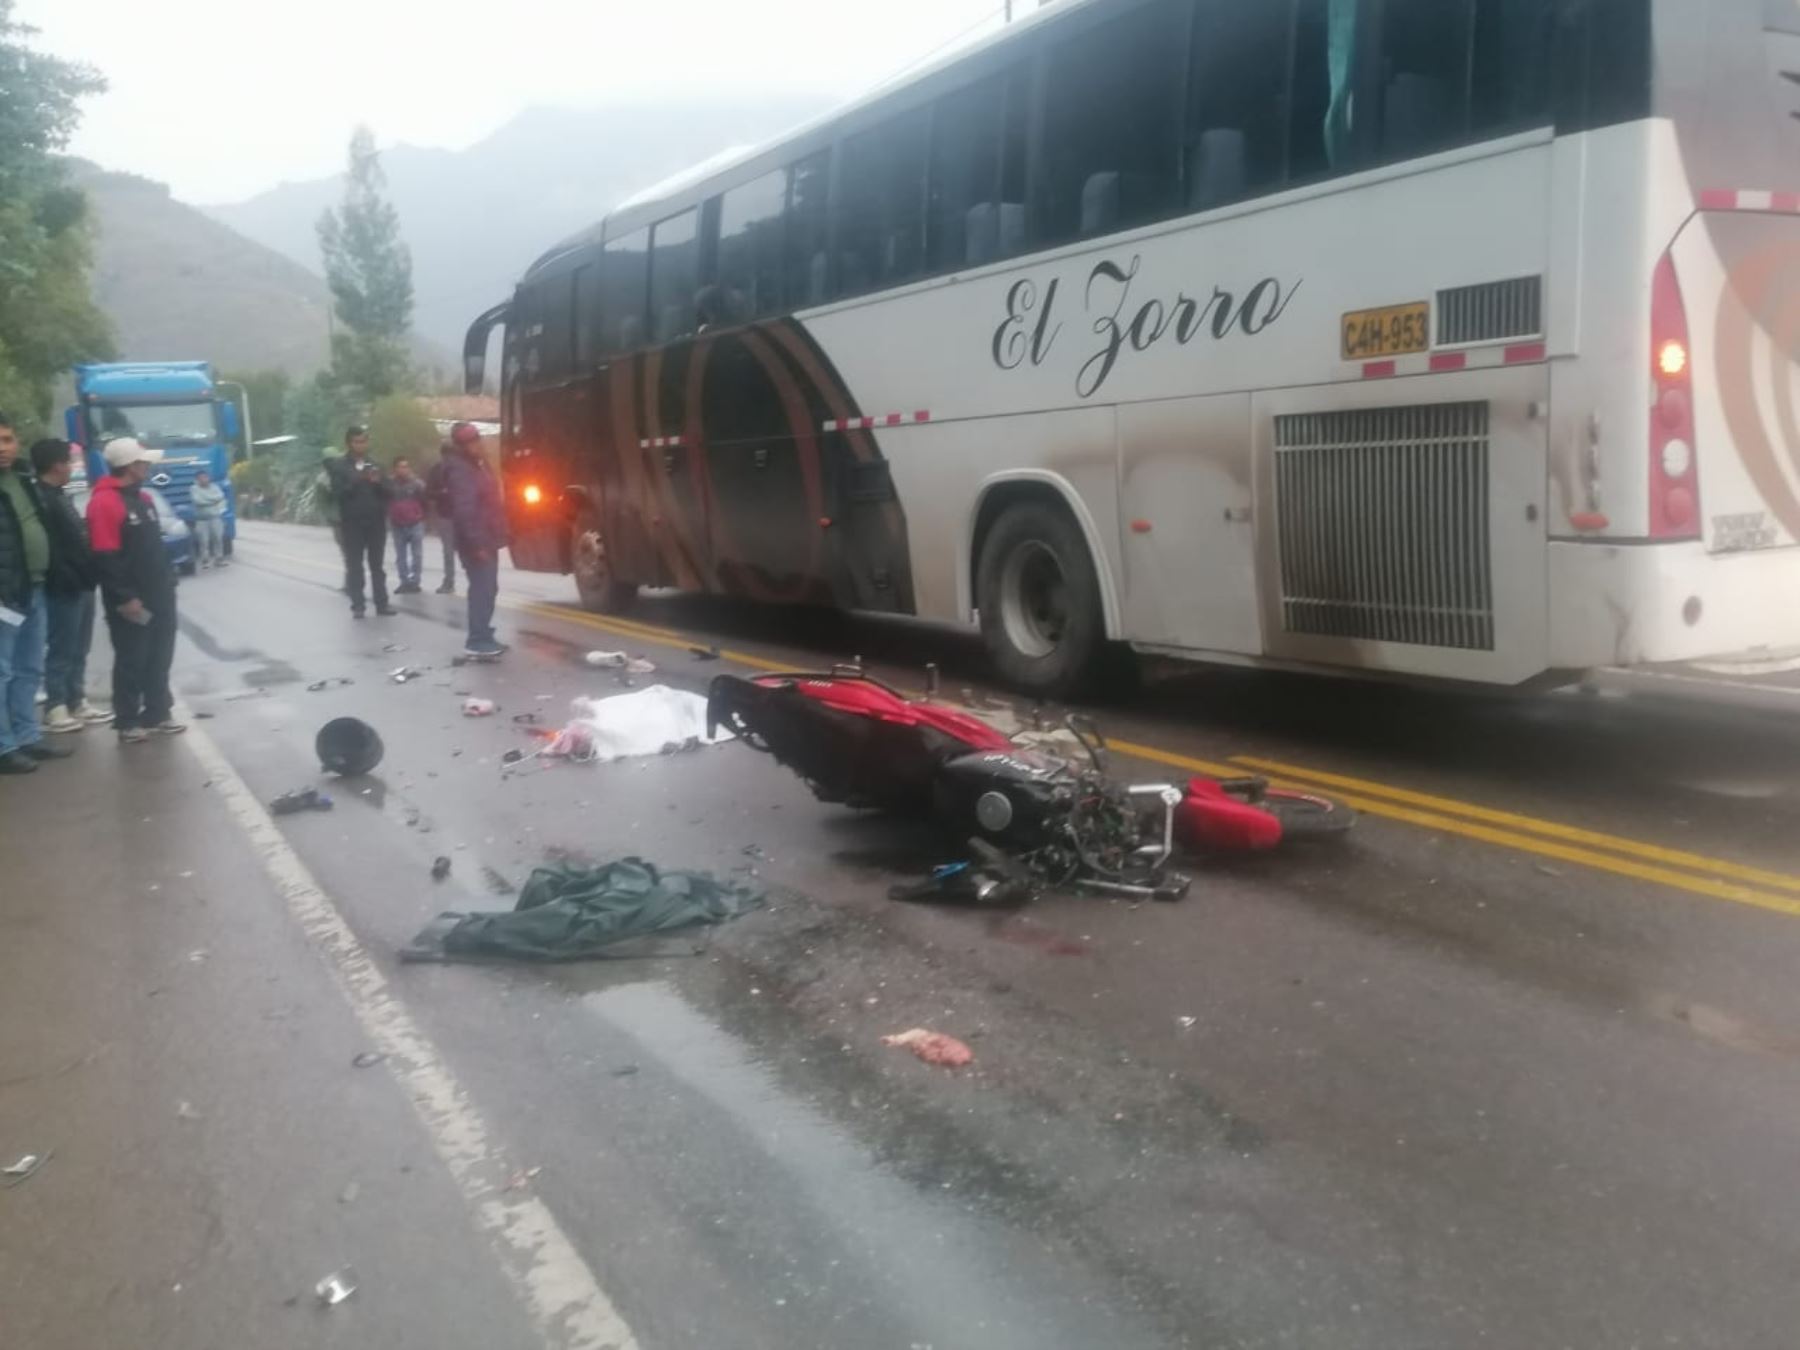 Tres miembros de una familia fallecen tras accidente de tránsito ocurrido en la provincia de Quispicanchi, en Cusco.